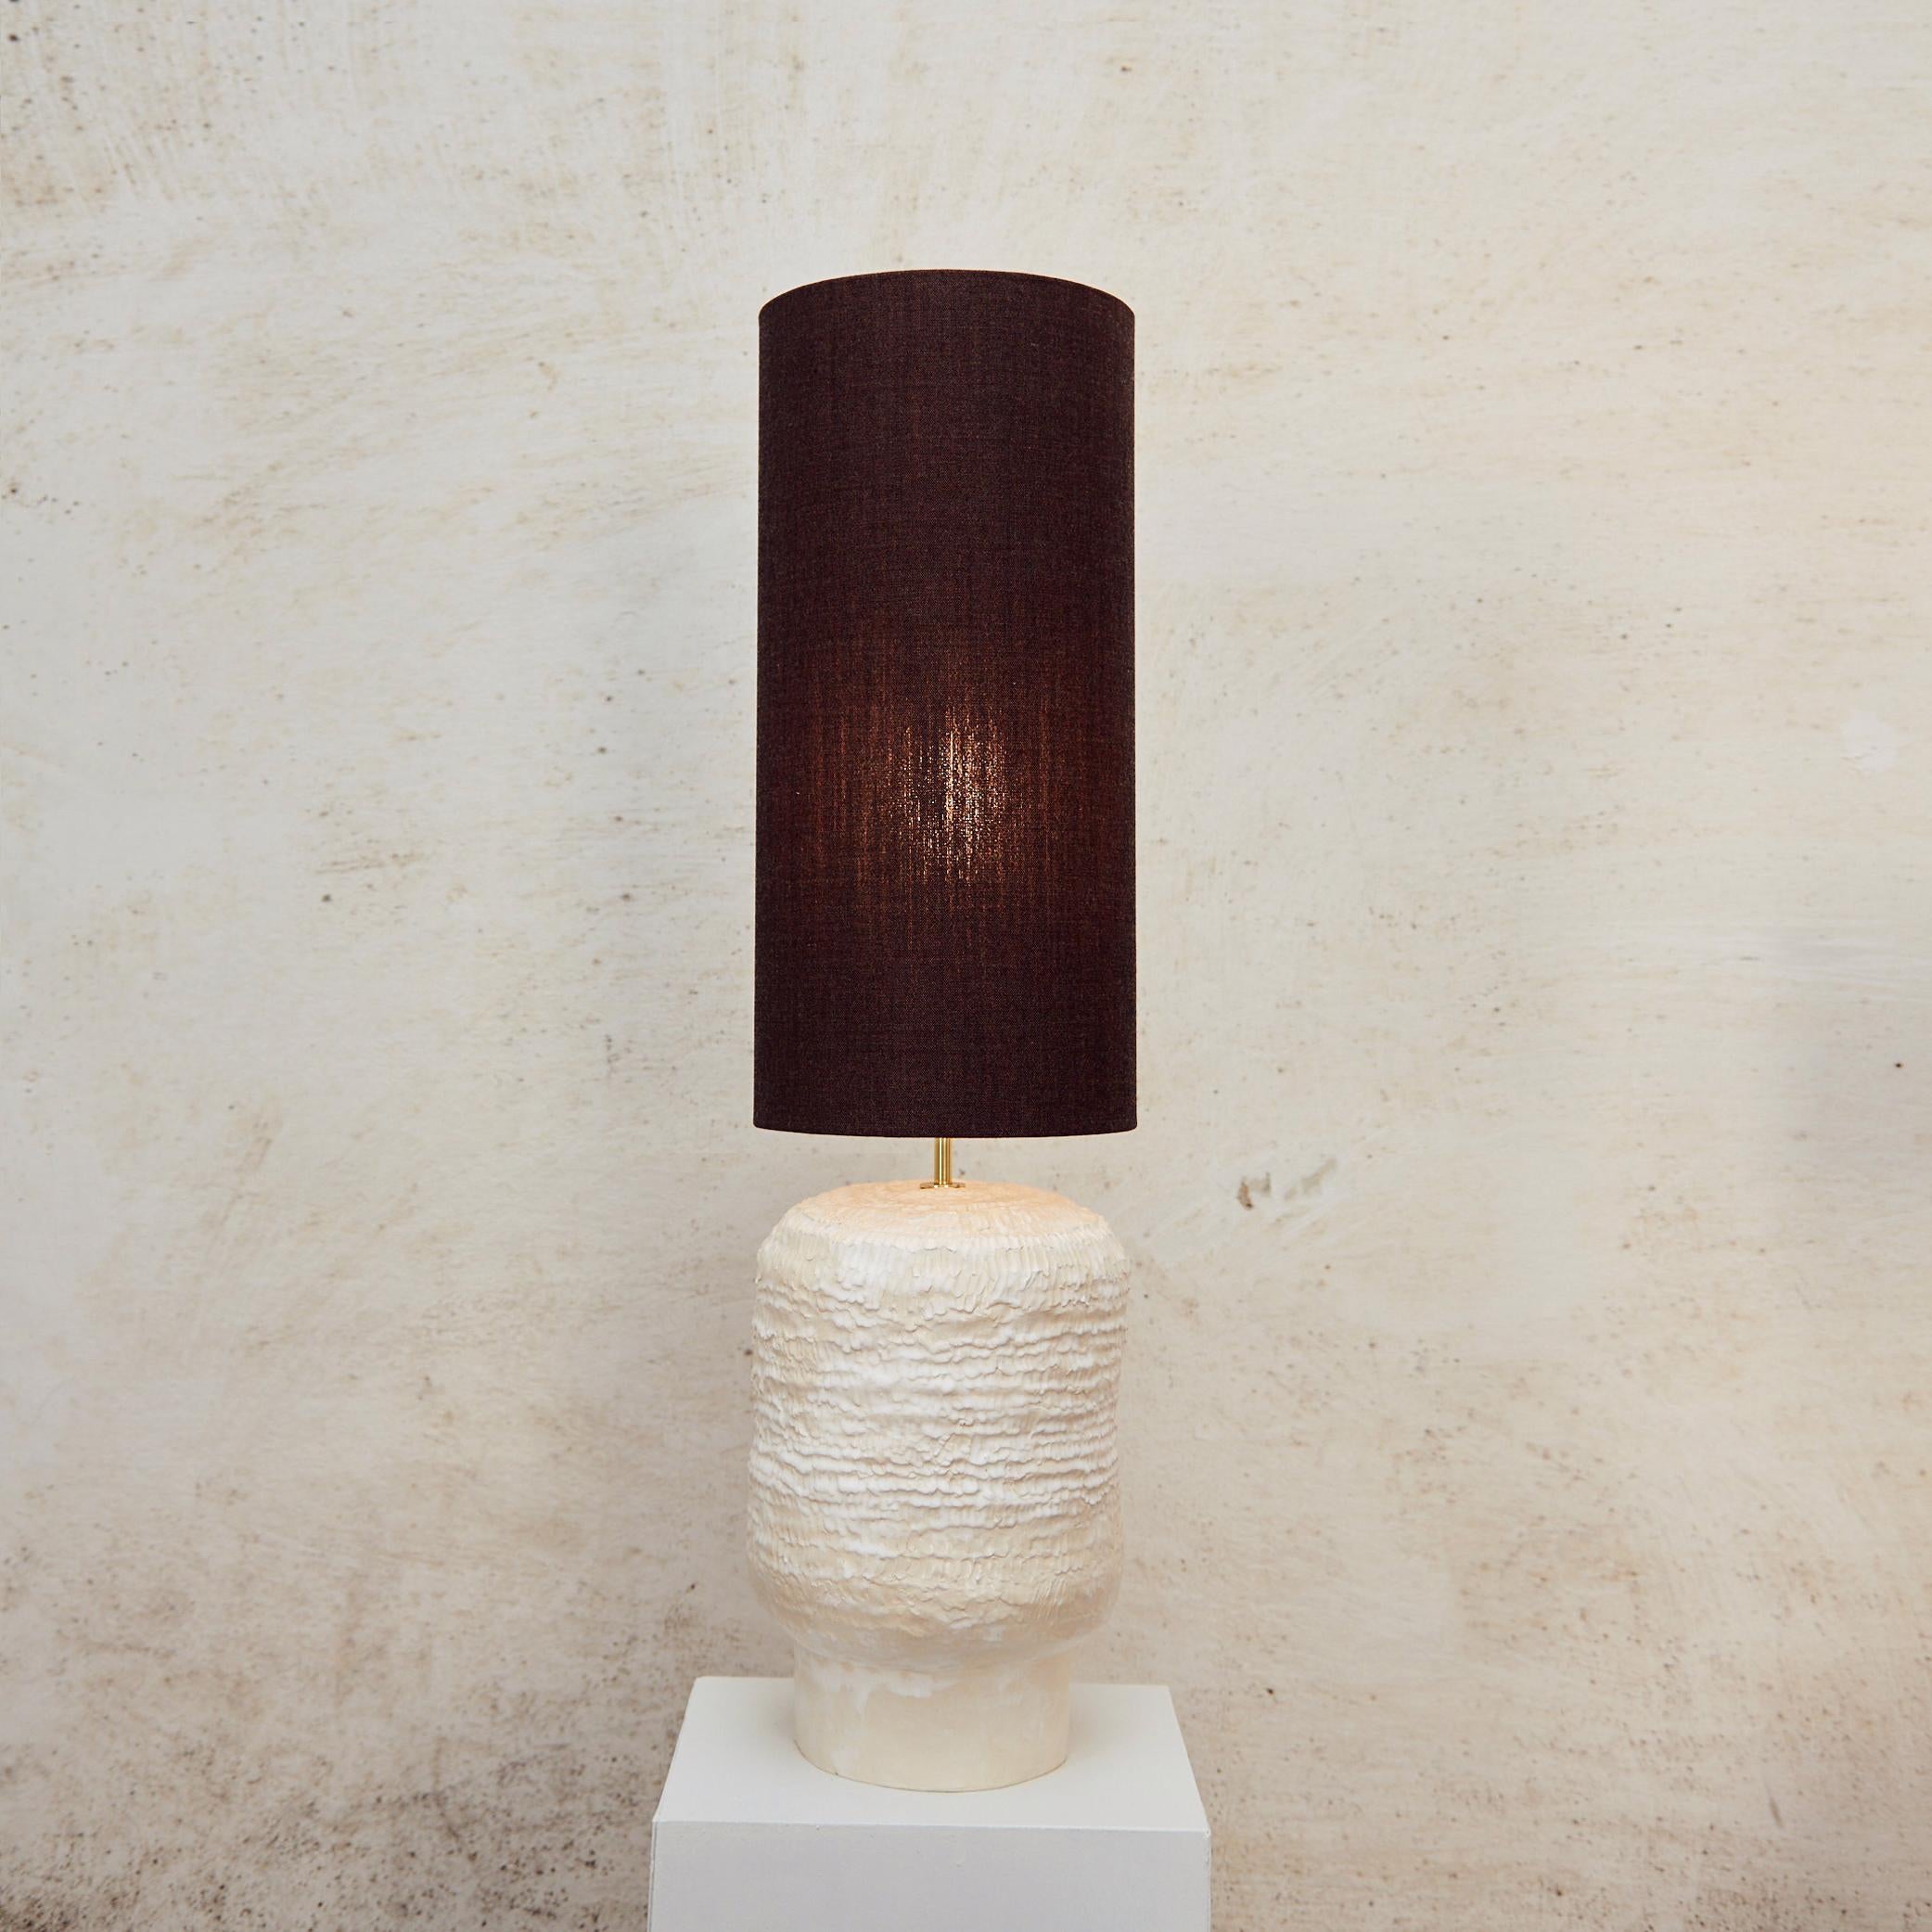 Lampe de table en céramique artisanale par project 213A.
Fabriqué dans l'atelier de céramique de la marque.

Lumière lancée en 2023 lors du Salone de Mobile à la foire Alcova de Milan dans le cadre d'une nouvelle gamme de lampes artisanales en